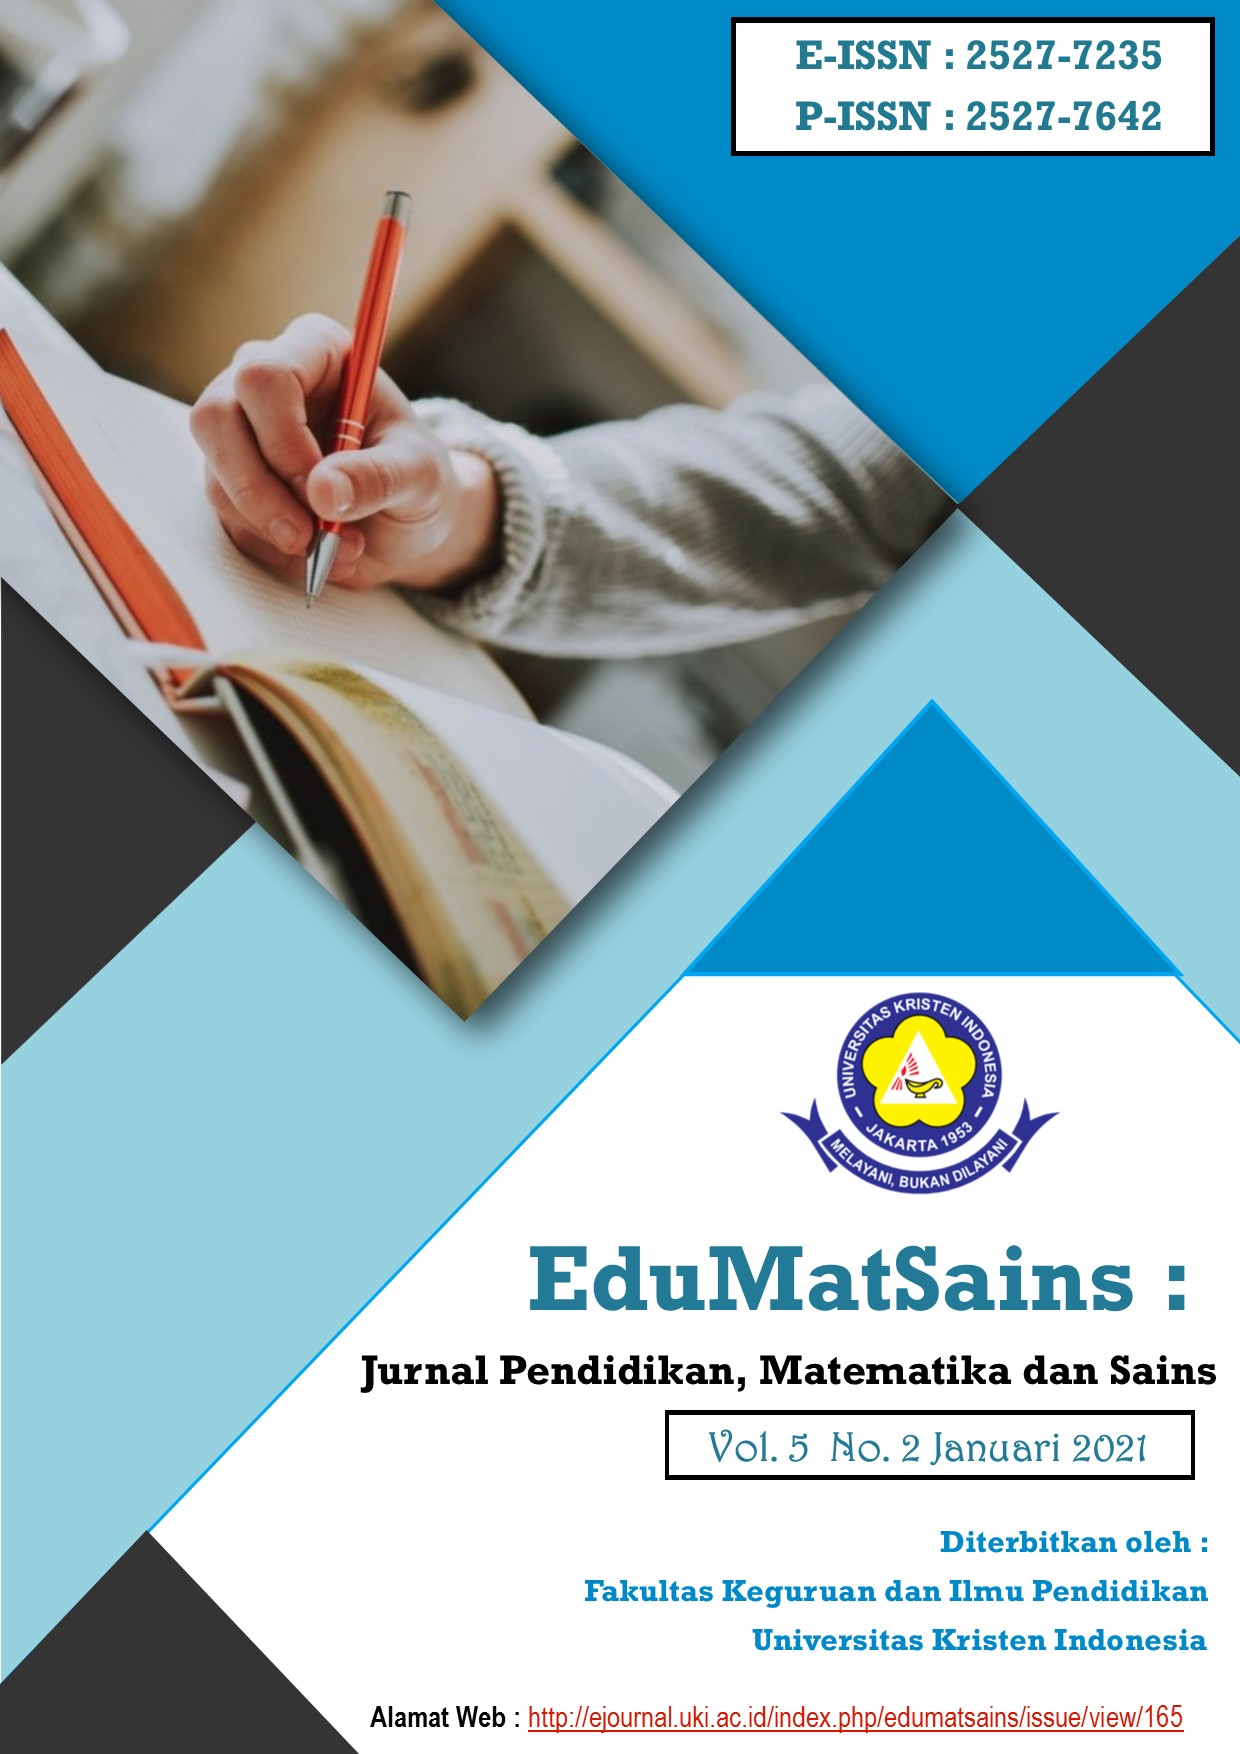 EduMatSains : Jurnal Pendidikan, Matematika dan Sains